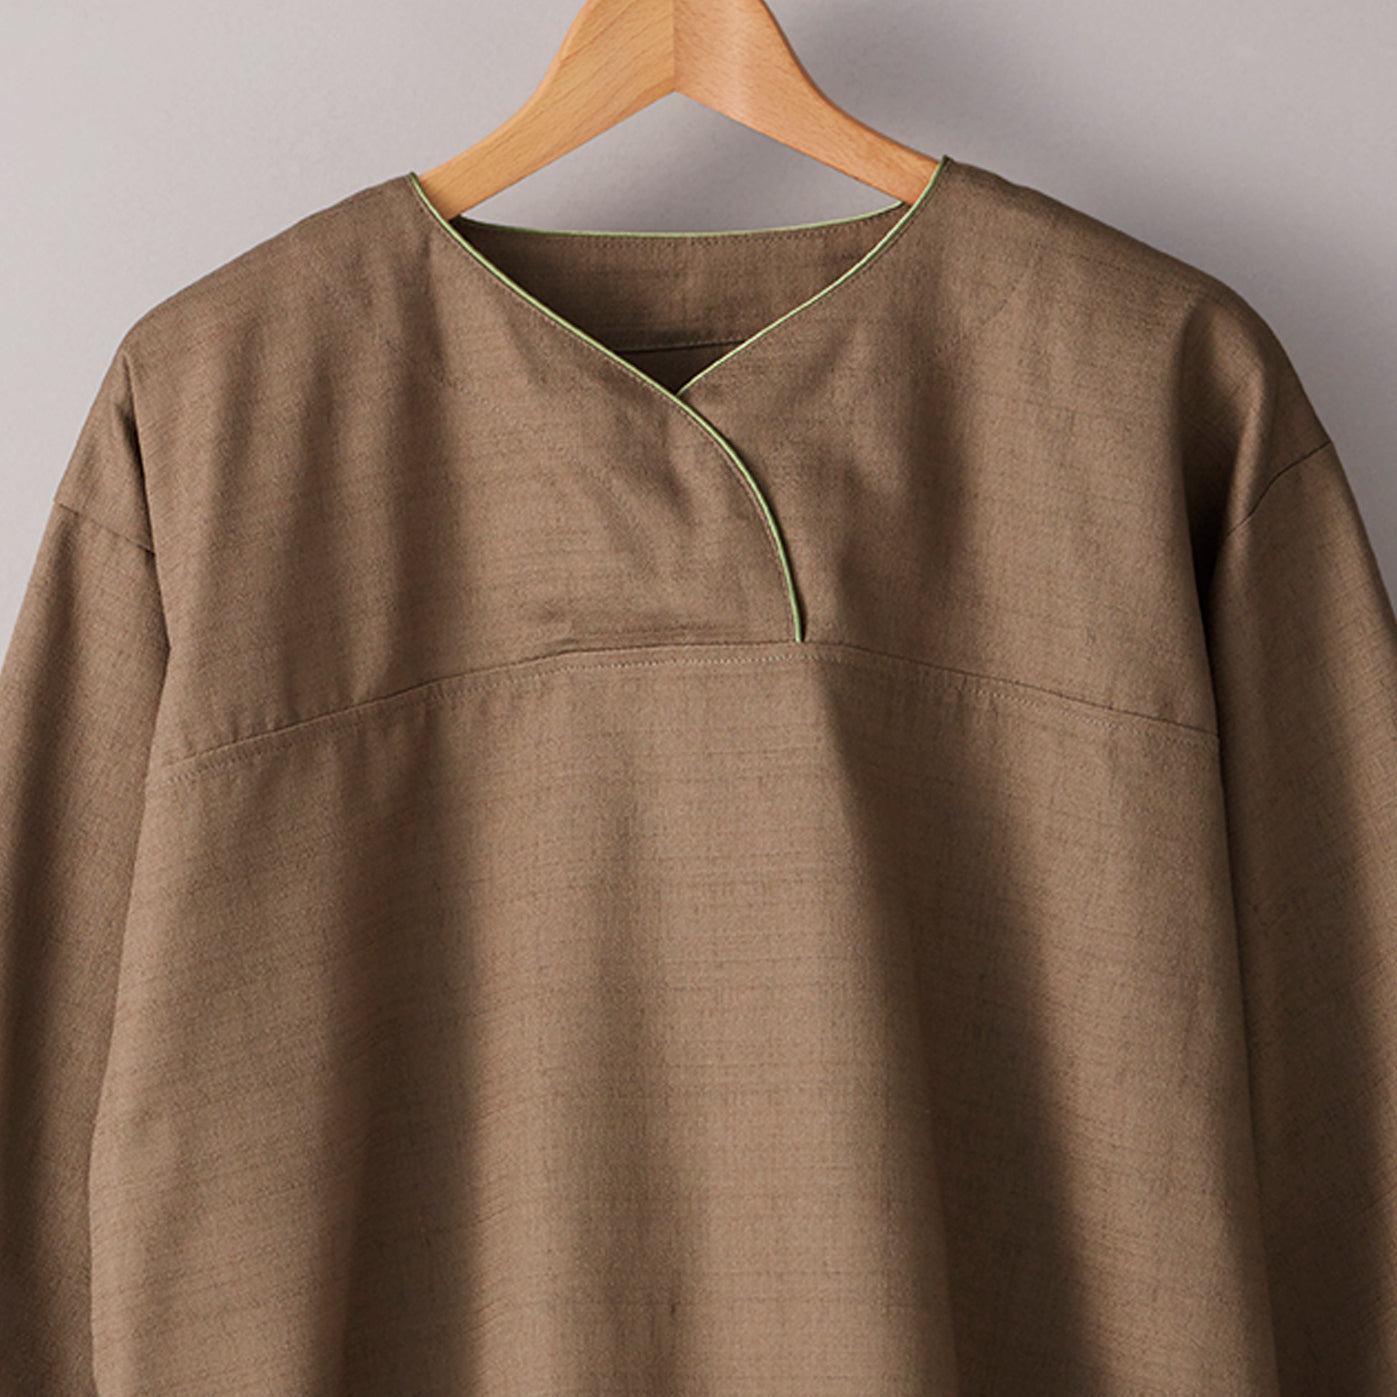 Pajamas_006〈brown & green〉